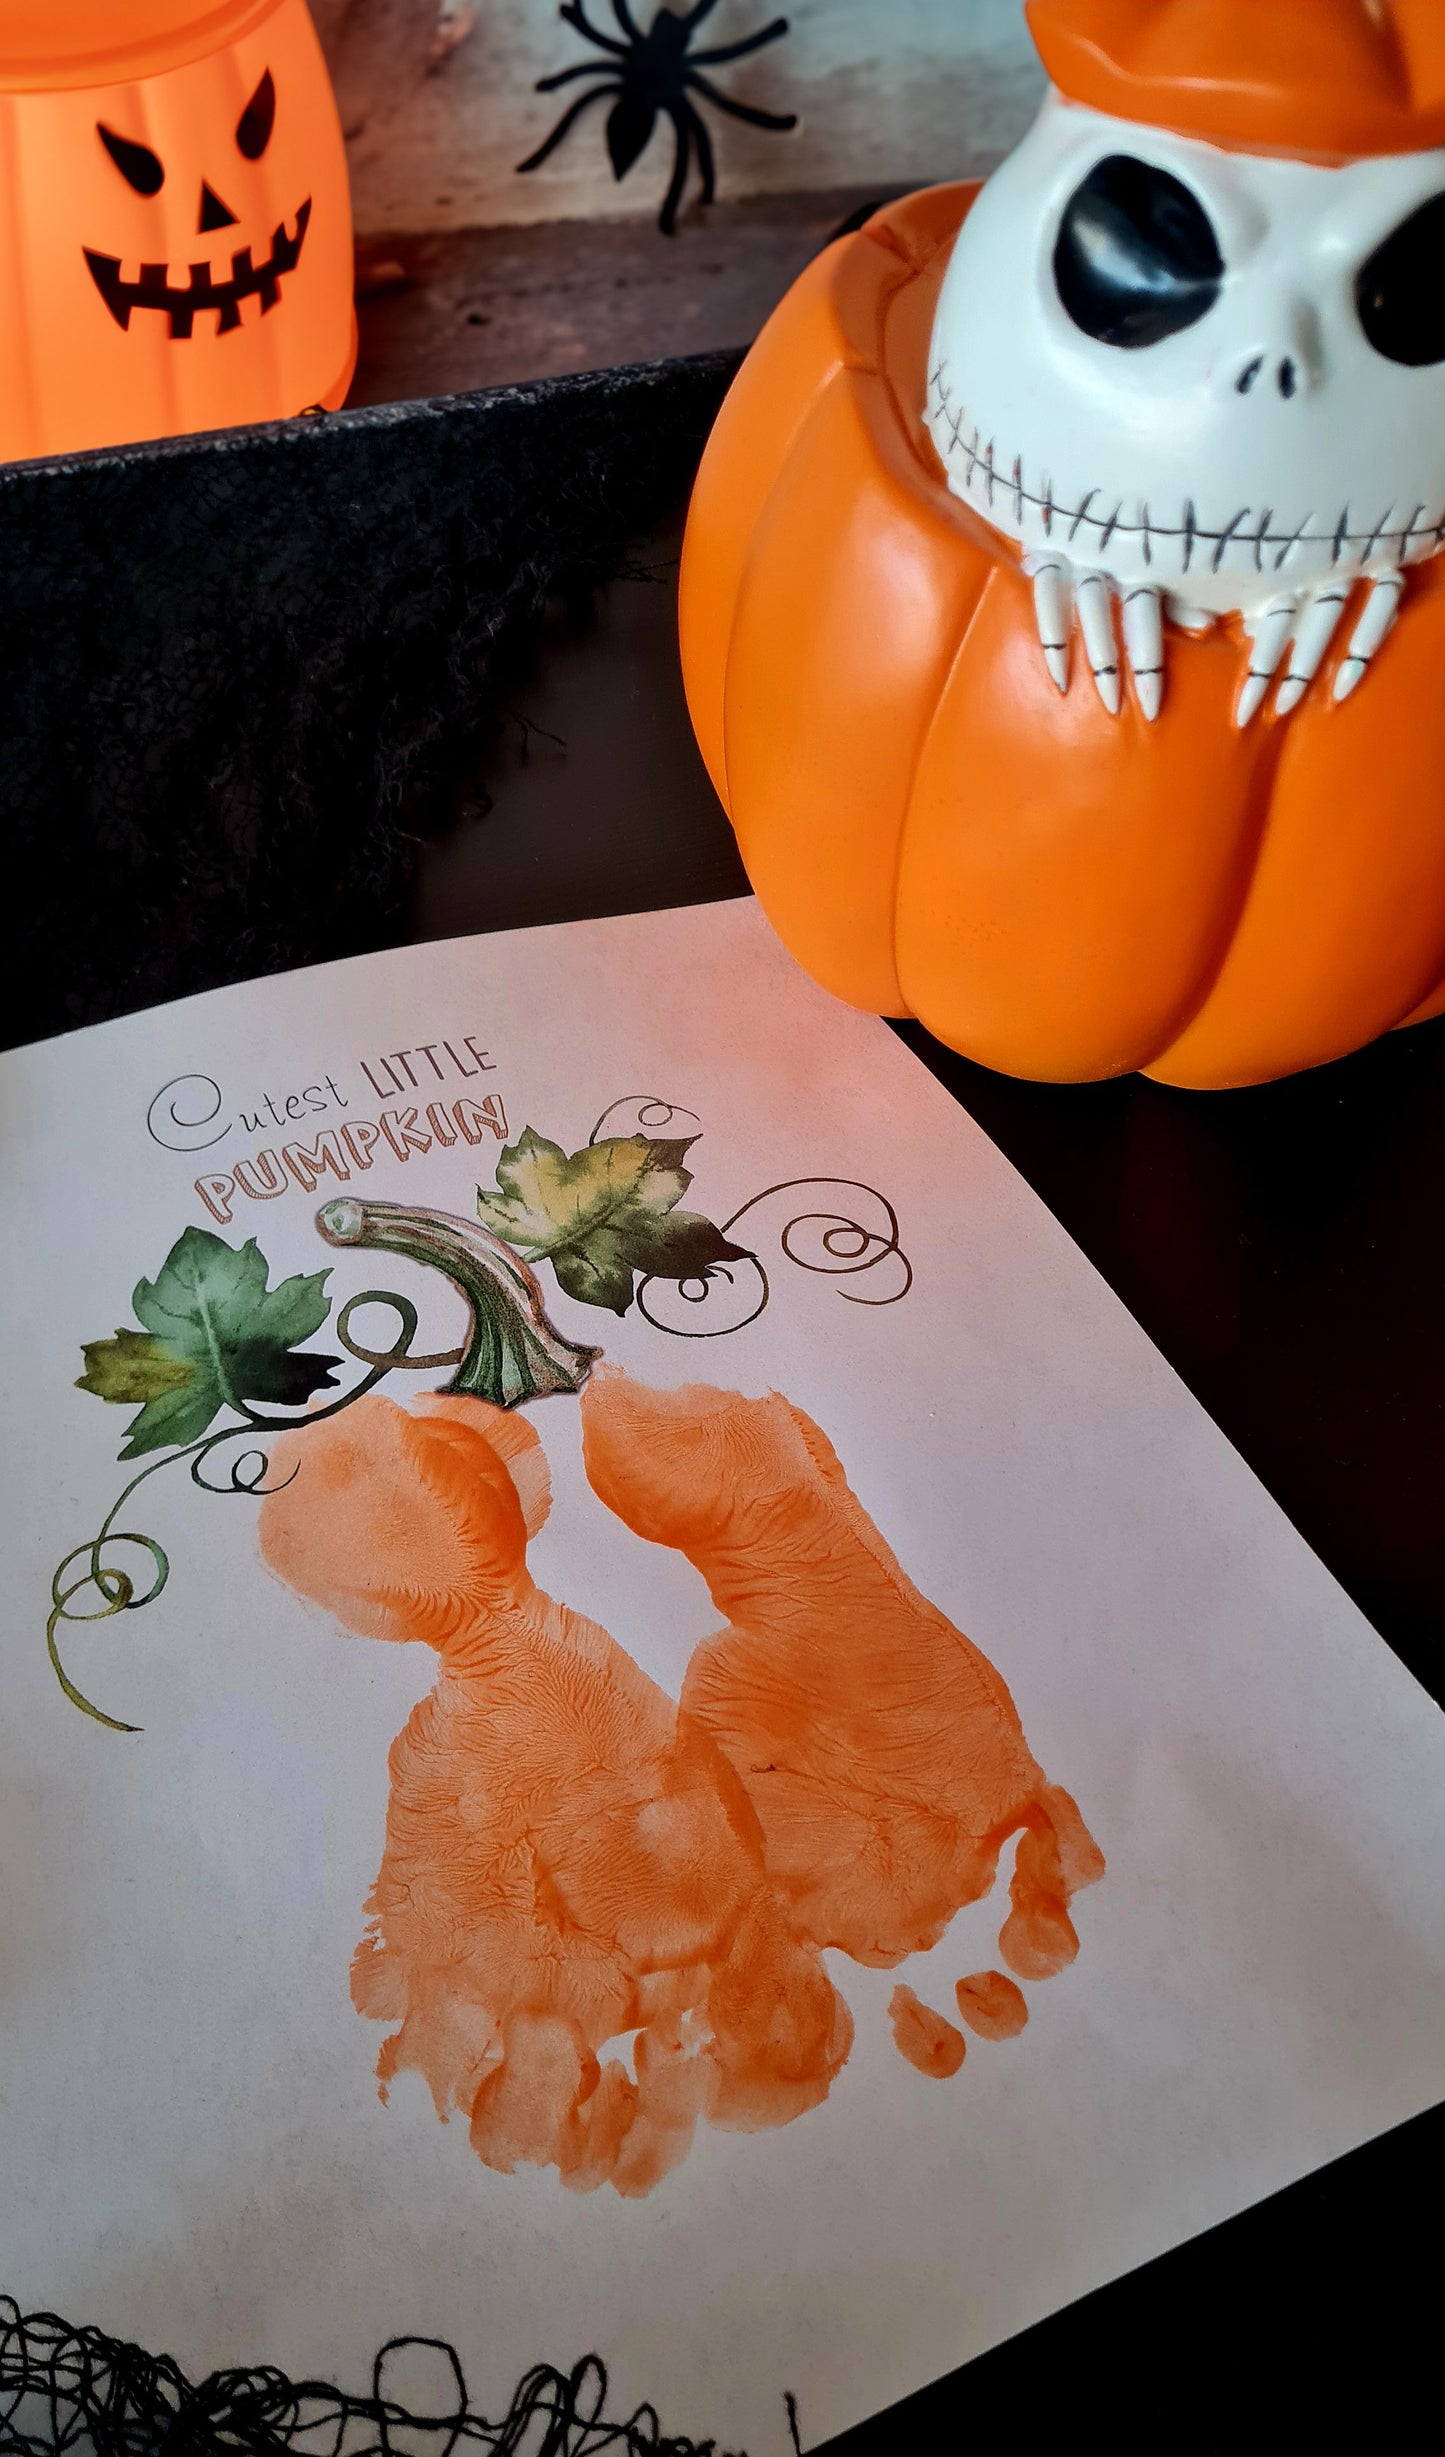 Cutest Little Pumpkin / Footprint Feet Hands Handprint / Halloween Art Craft / Kids Baby Toddler / Keepsake Memory Decor DIY Print 0319